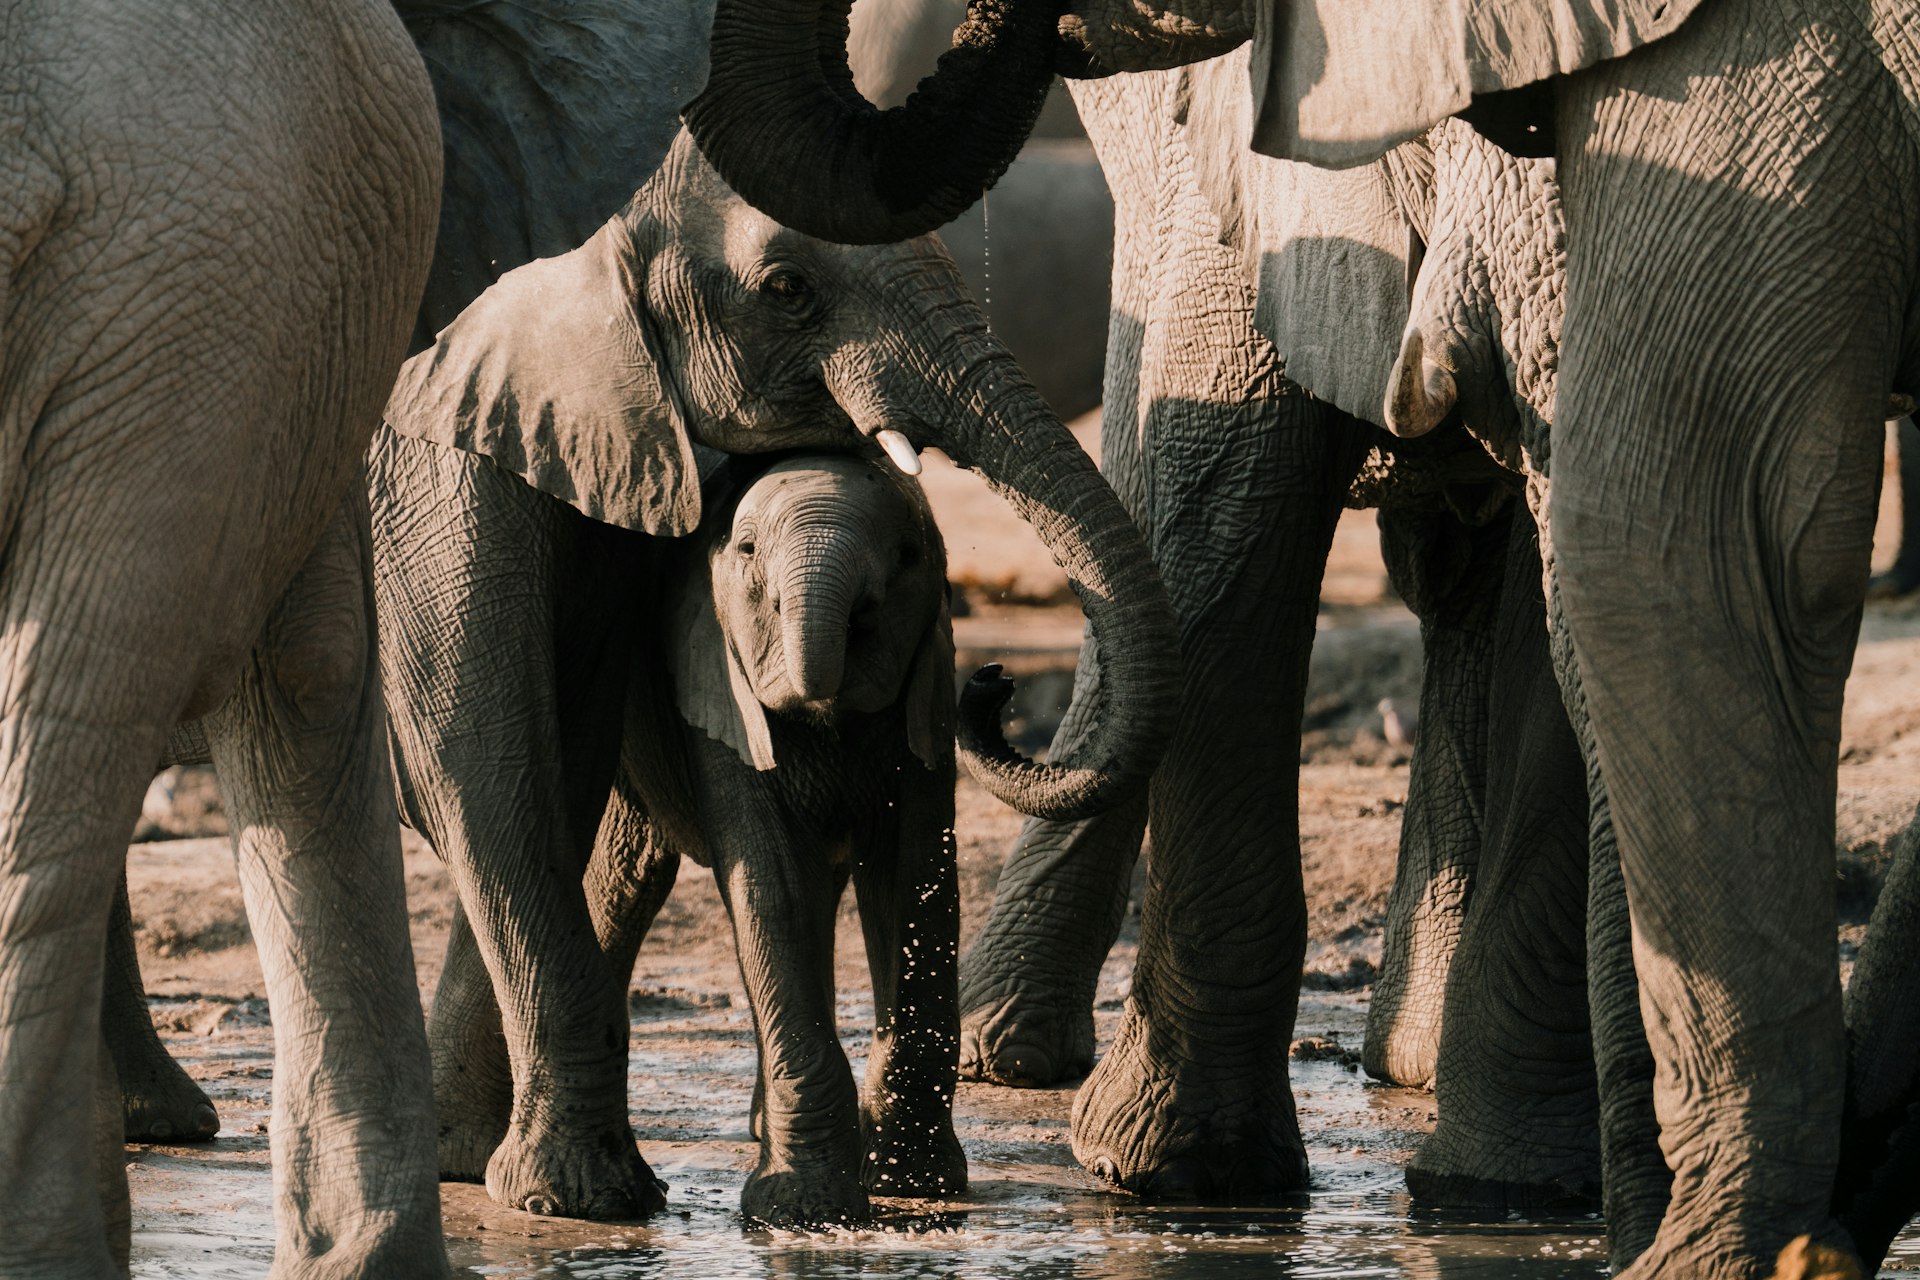 Elephants at a waterhole in Botswana